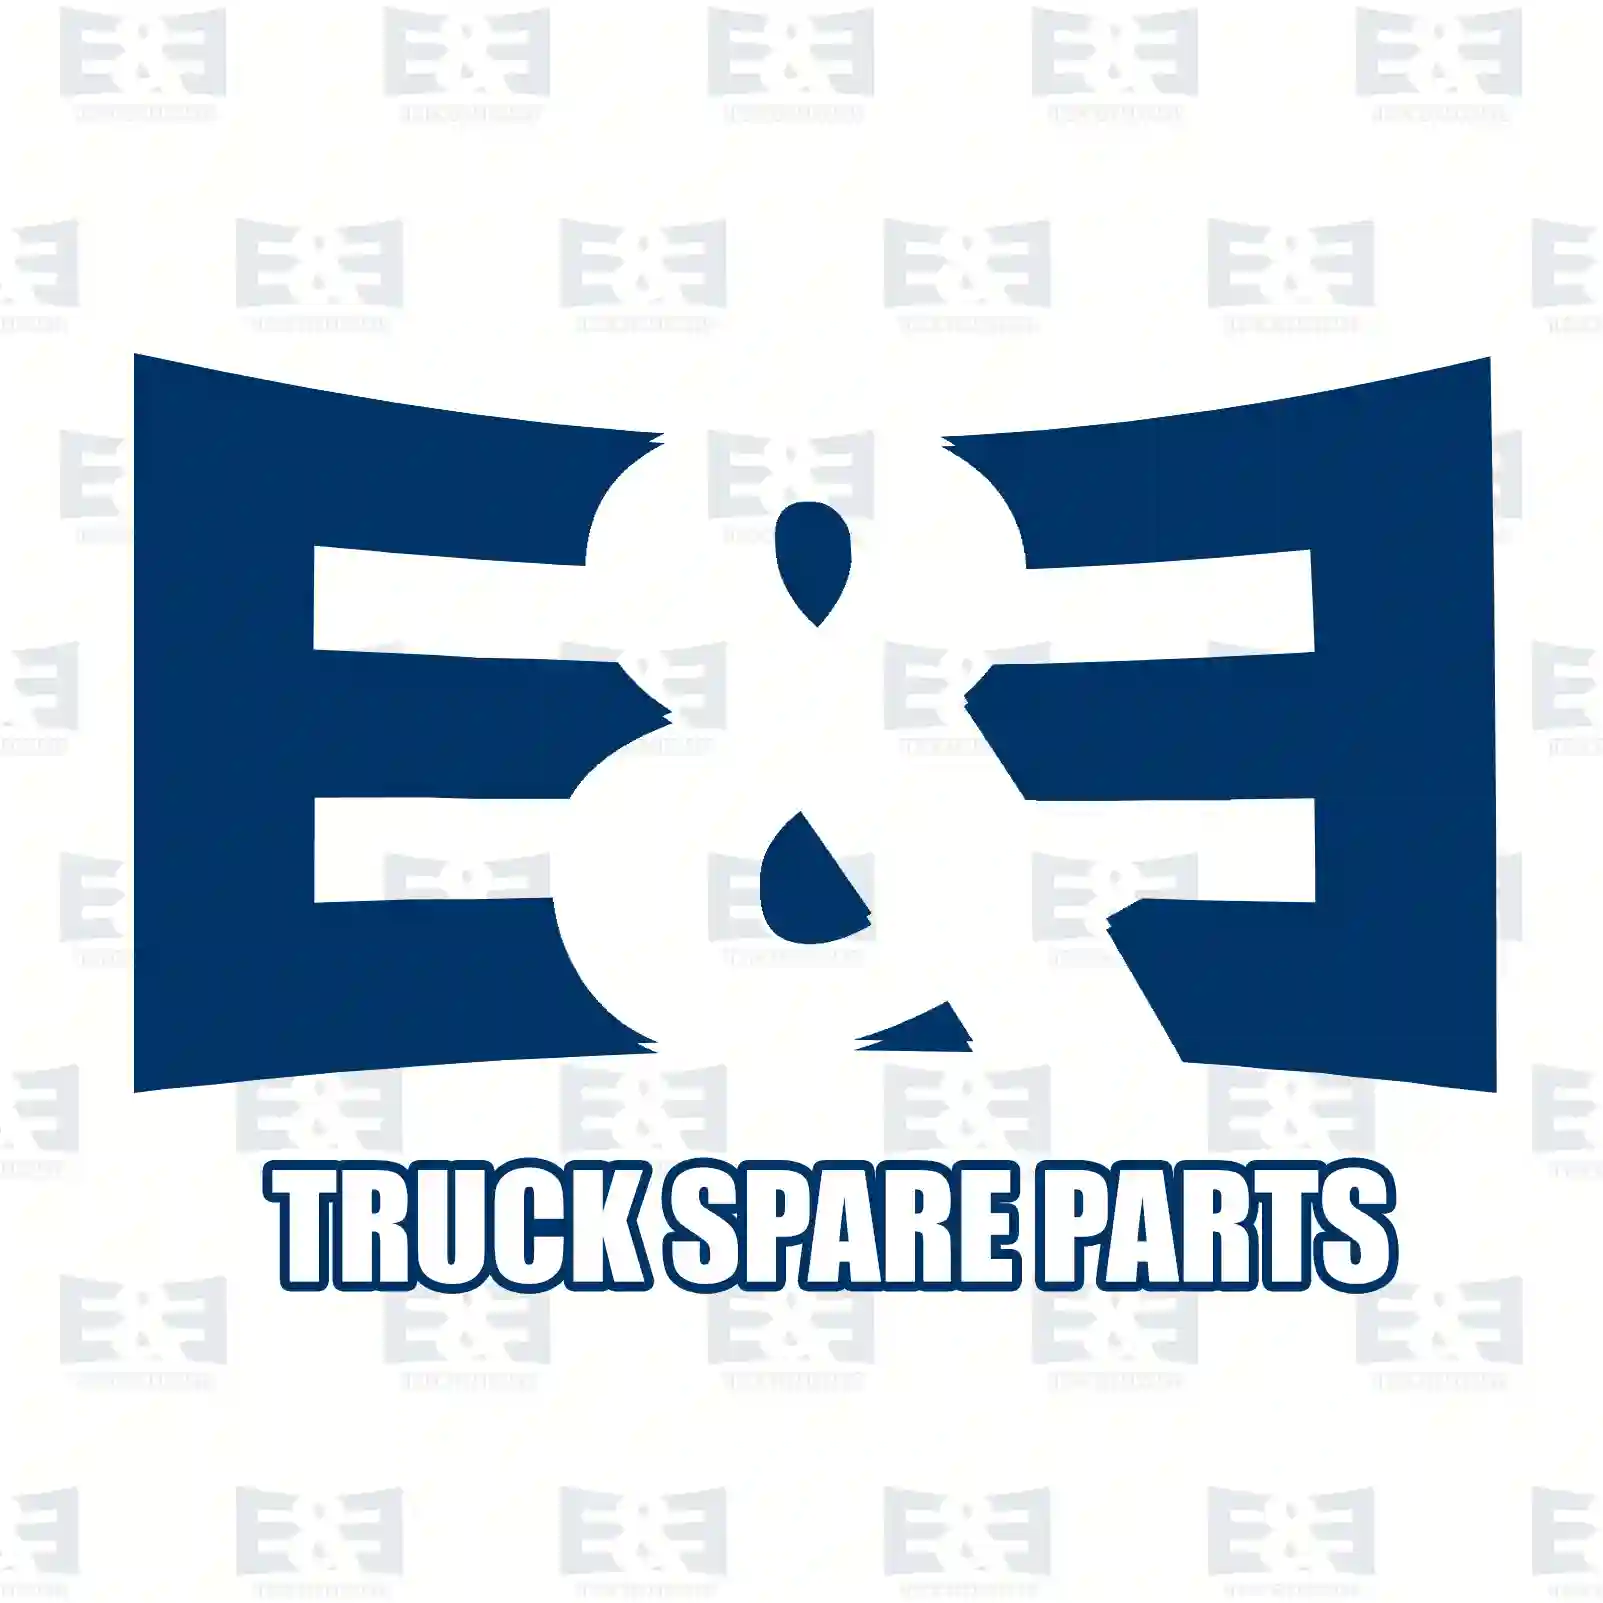 Oil cooler, retarder, 2E2276061, 1761517, 1804210, 2155059, ZG01680-0008 ||  2E2276061 E&E Truck Spare Parts | Truck Spare Parts, Auotomotive Spare Parts Oil cooler, retarder, 2E2276061, 1761517, 1804210, 2155059, ZG01680-0008 ||  2E2276061 E&E Truck Spare Parts | Truck Spare Parts, Auotomotive Spare Parts